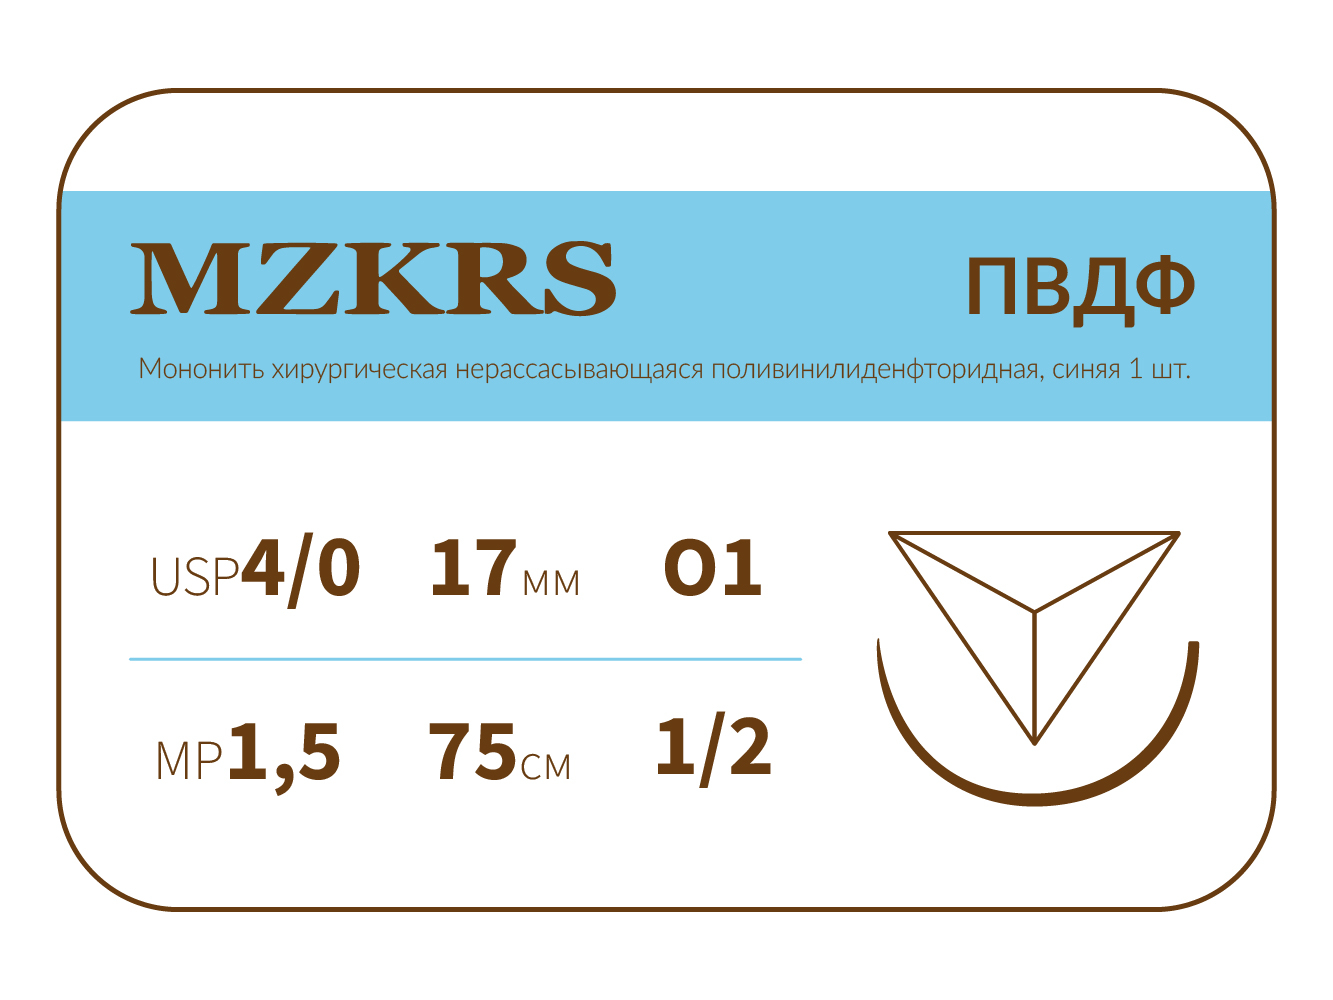 1712О1-Premium-4/0 (1.5)75 ПВДФ хирургическая нить поливинилиденфторидная, MZKRS (Россия)